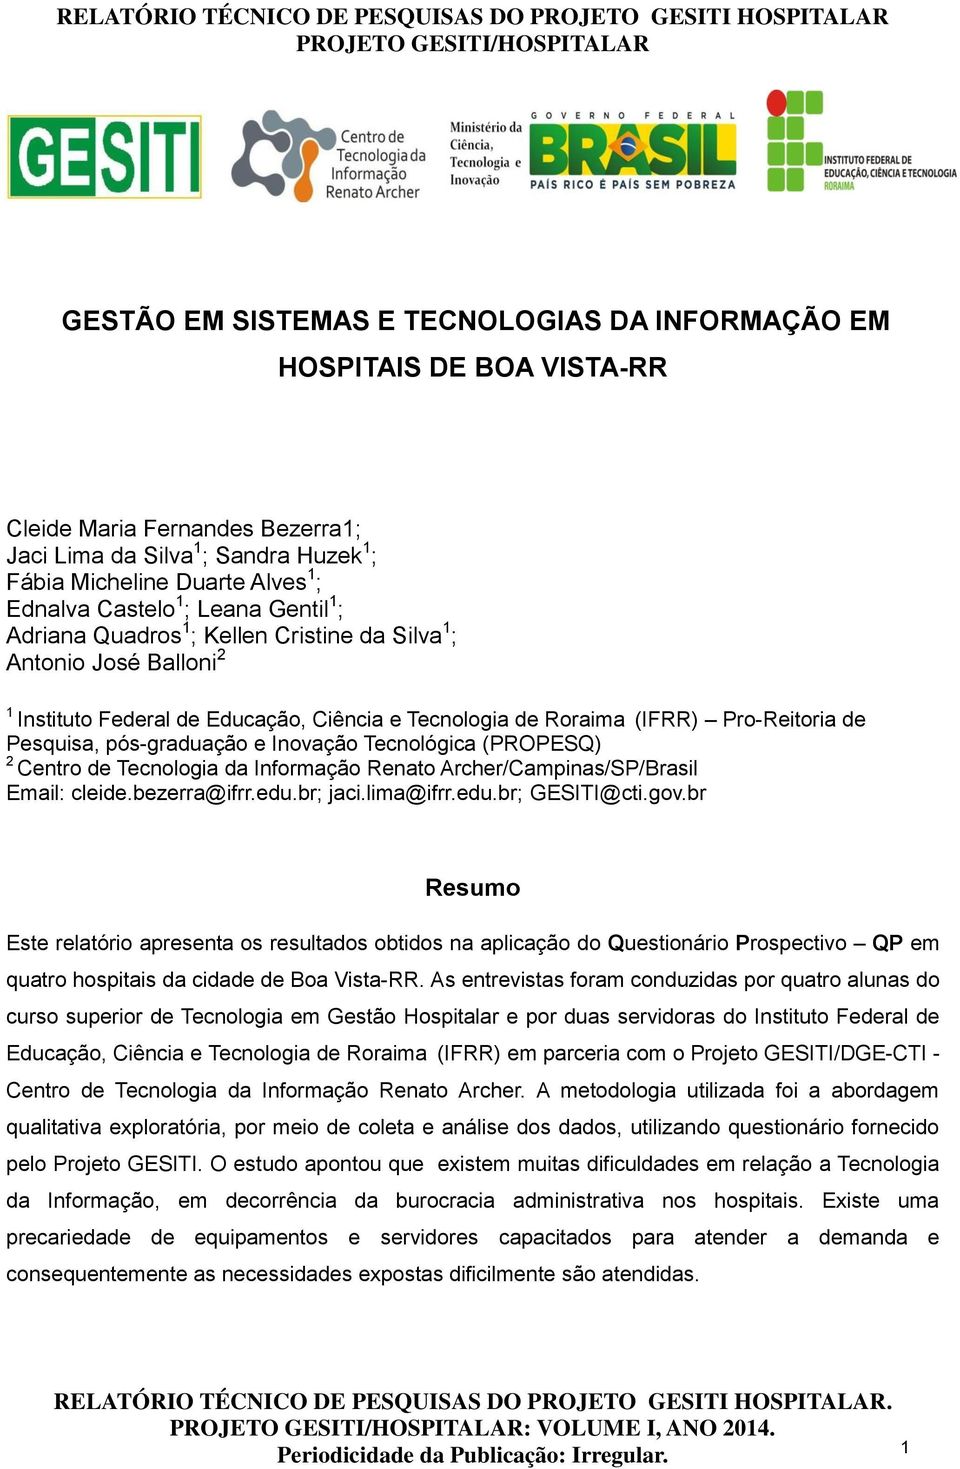 pós-graduação e Inovação Tecnológica (PROPESQ) 2 Centro de Tecnologia da Informação Renato Archer/Campinas/SP/Brasil Email: cleide.bezerra@ifrr.edu.br; jaci.lima@ifrr.edu.br; GESITI@cti.gov.